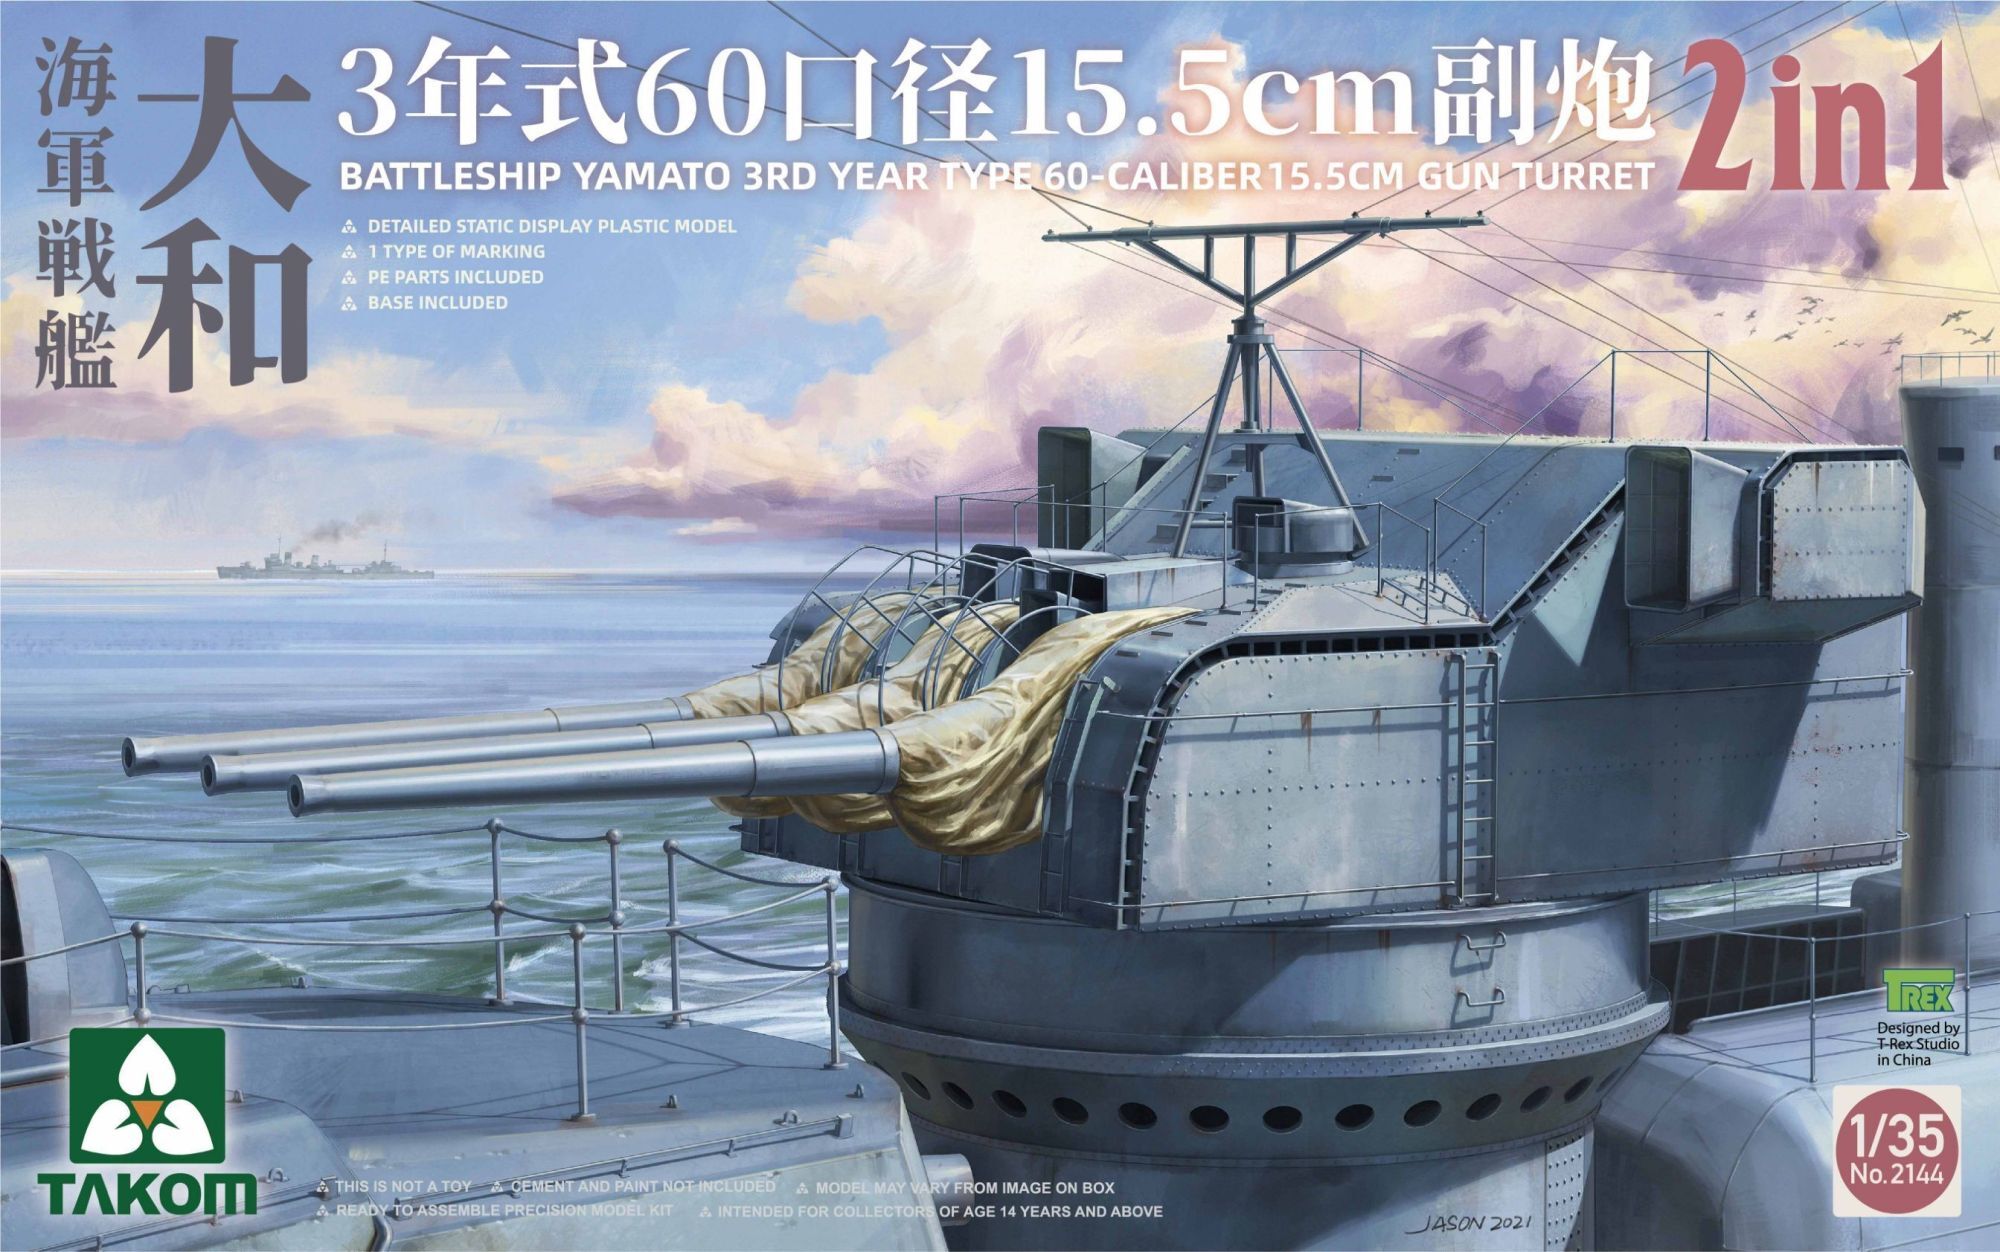 タコム[TKO2144MB]1/35 戦艦大和 3年式 60口径15.5cm砲塔 2 in 1 w/金属砲身セット